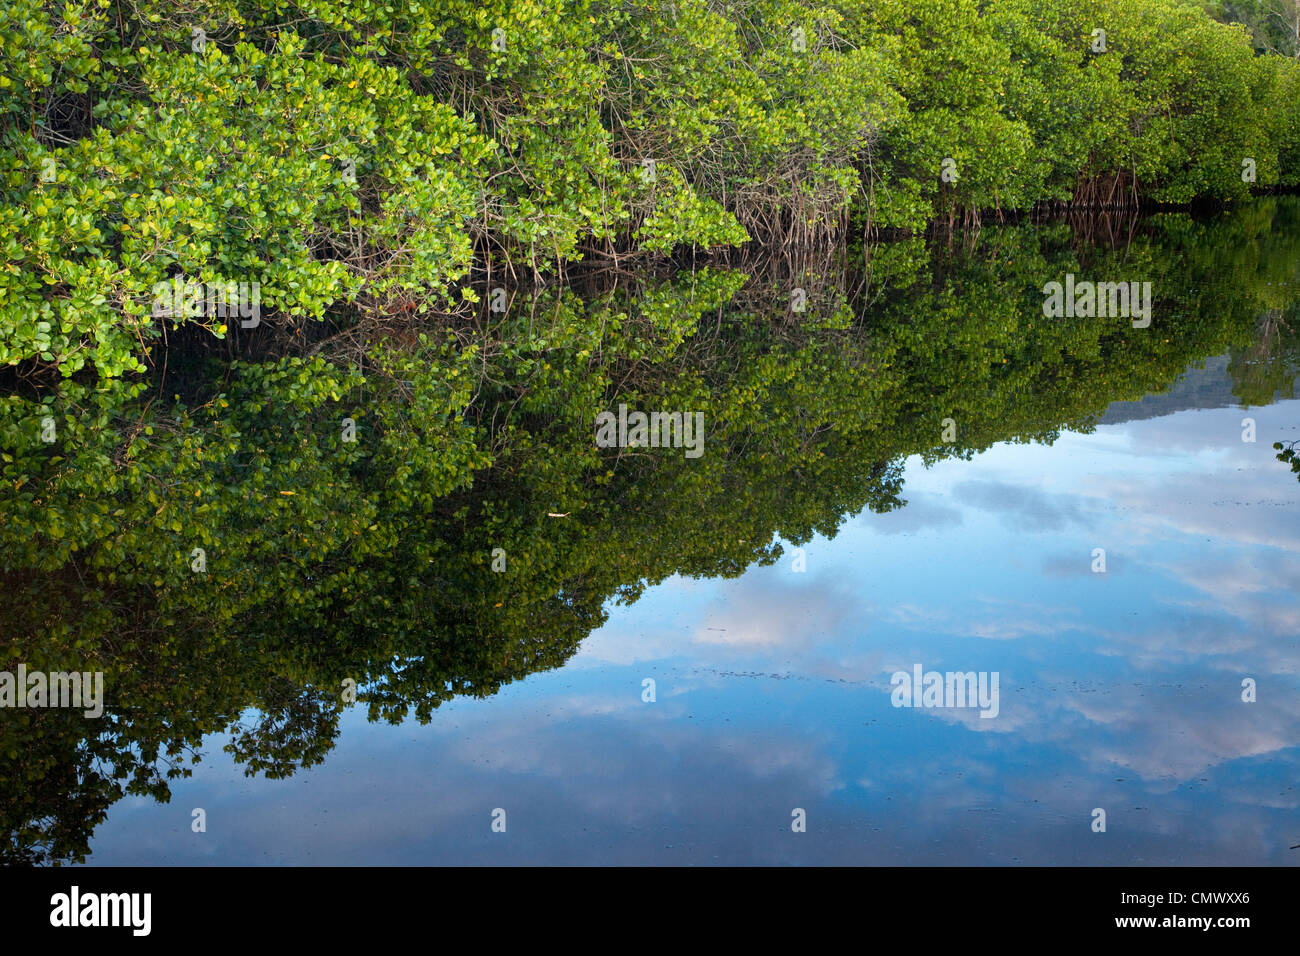 Vía navegable bordeada de manglares. Kewarra Beach, Cairns, Queensland, Australia Foto de stock